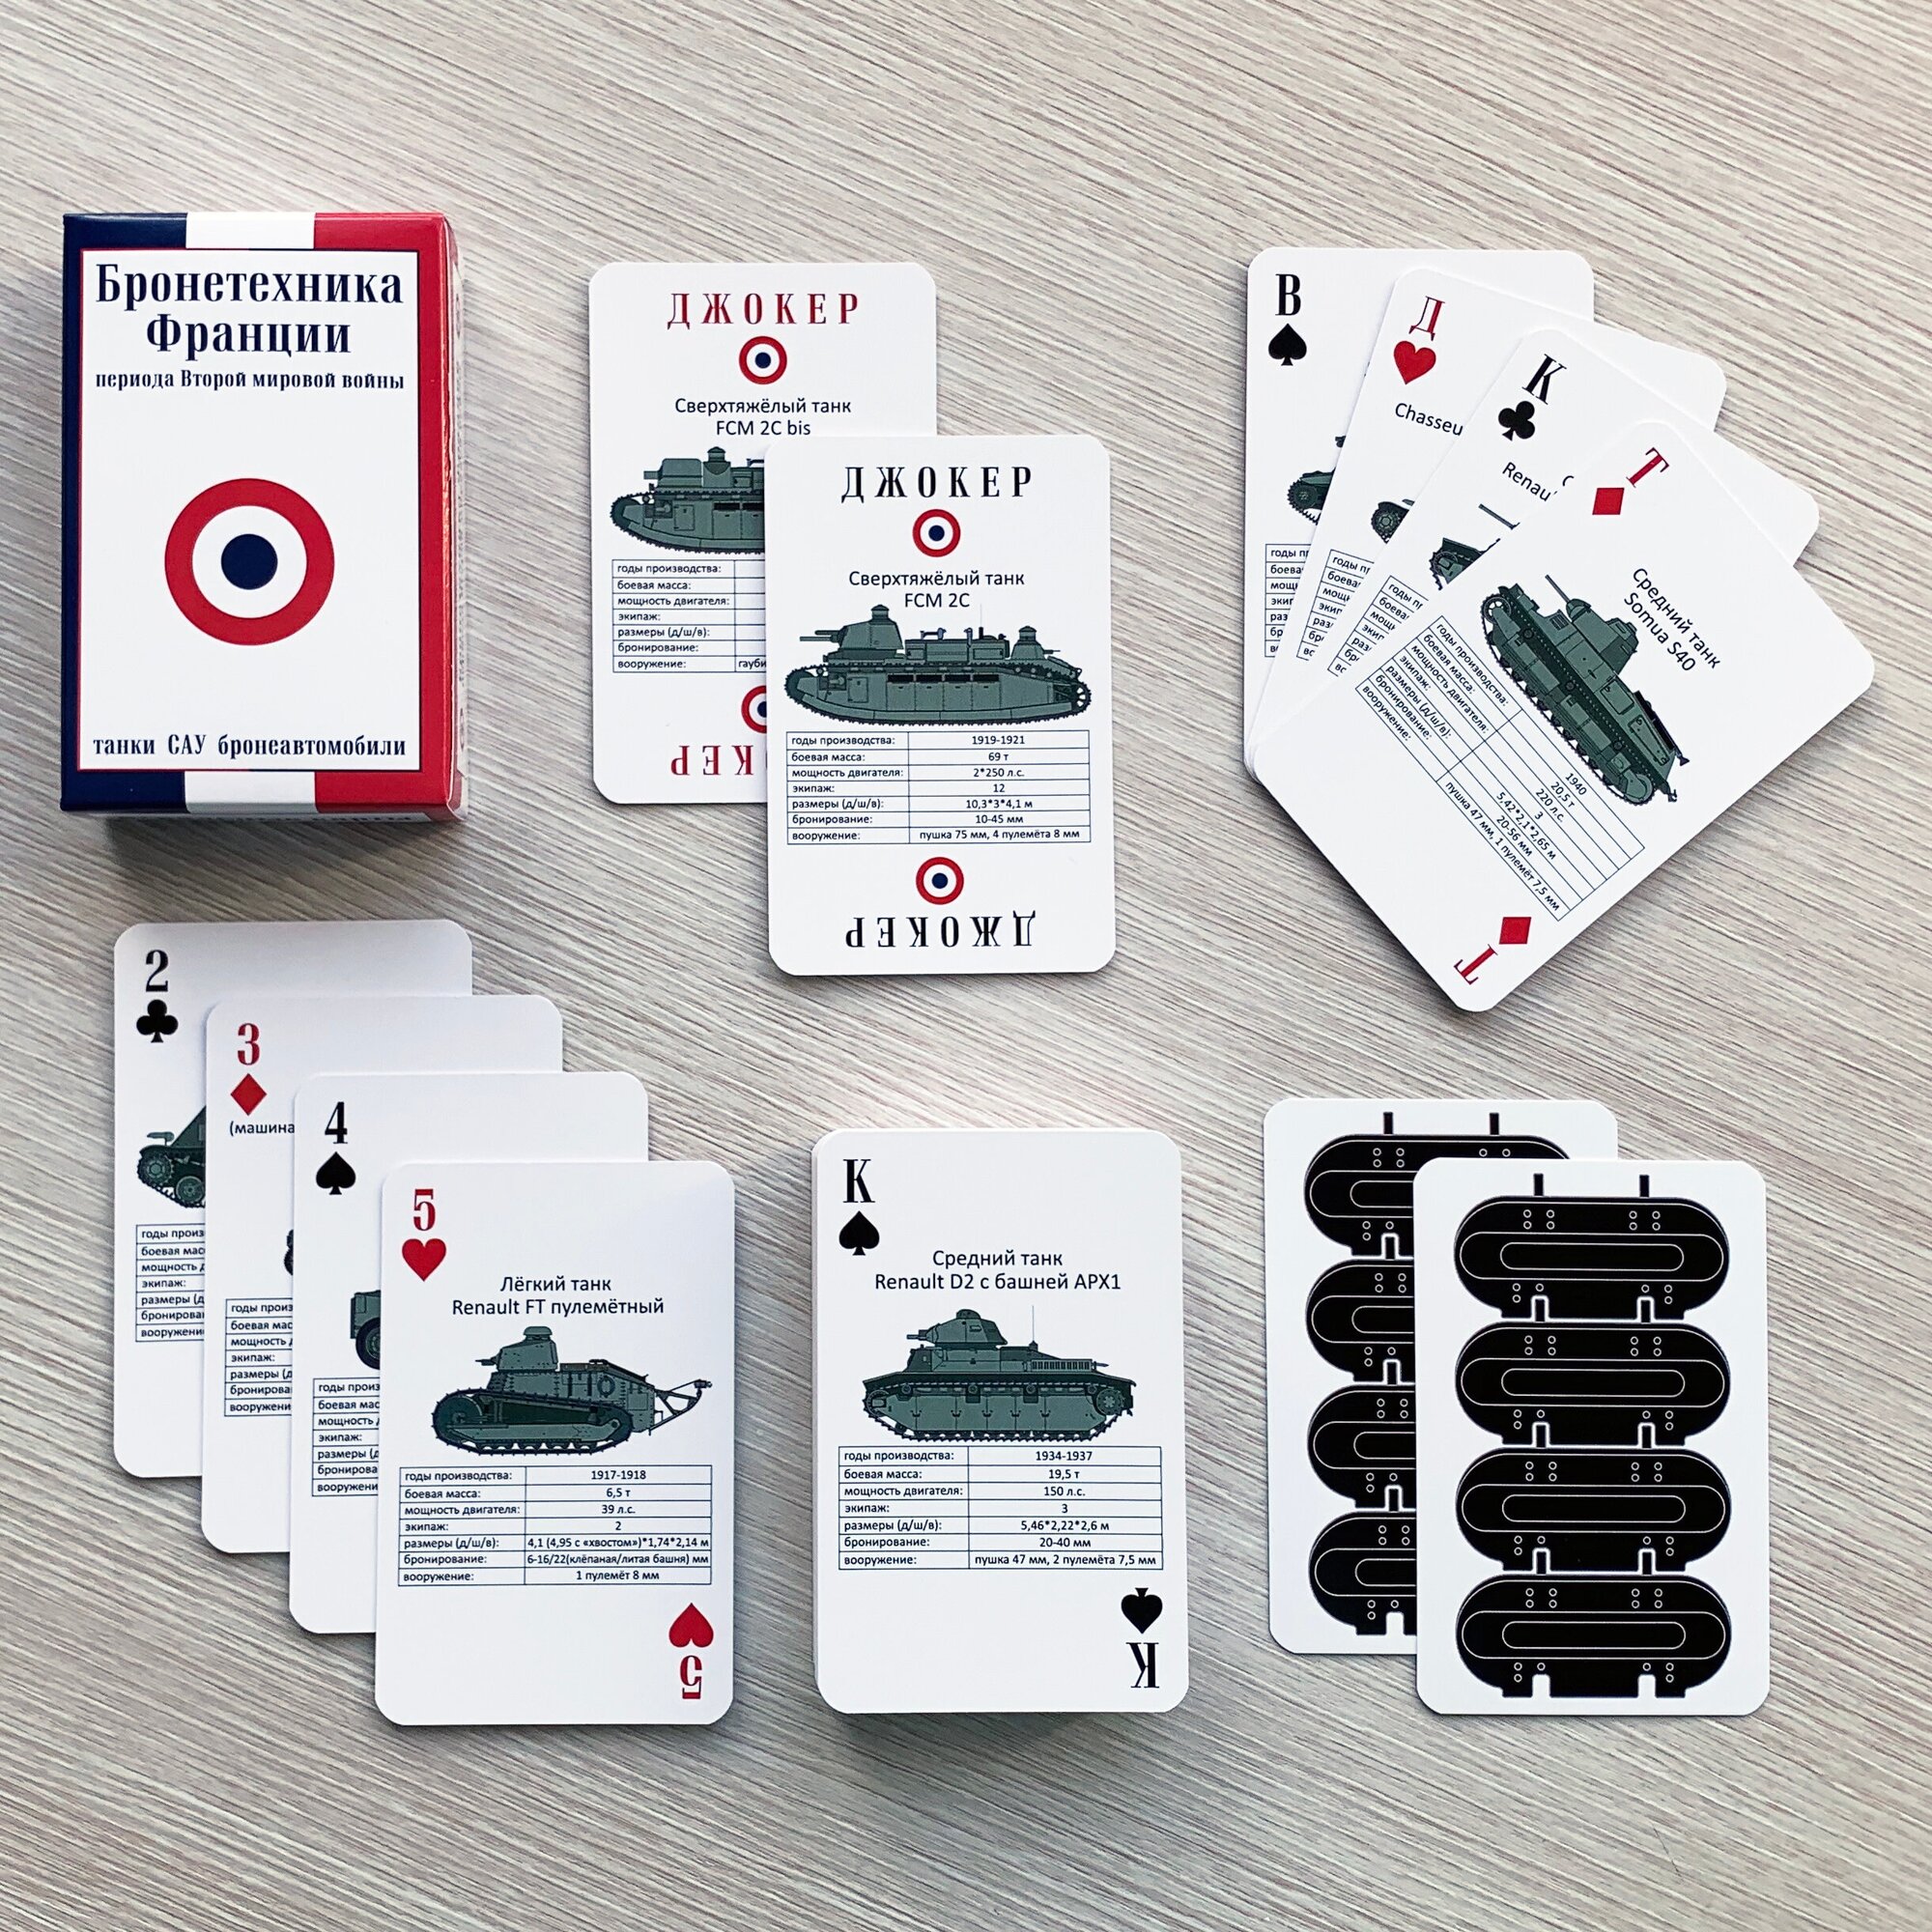 Игральные карты "Бронетехника Франции периода Второй мировой войны" танки САУ и бронеавтомобили Франции